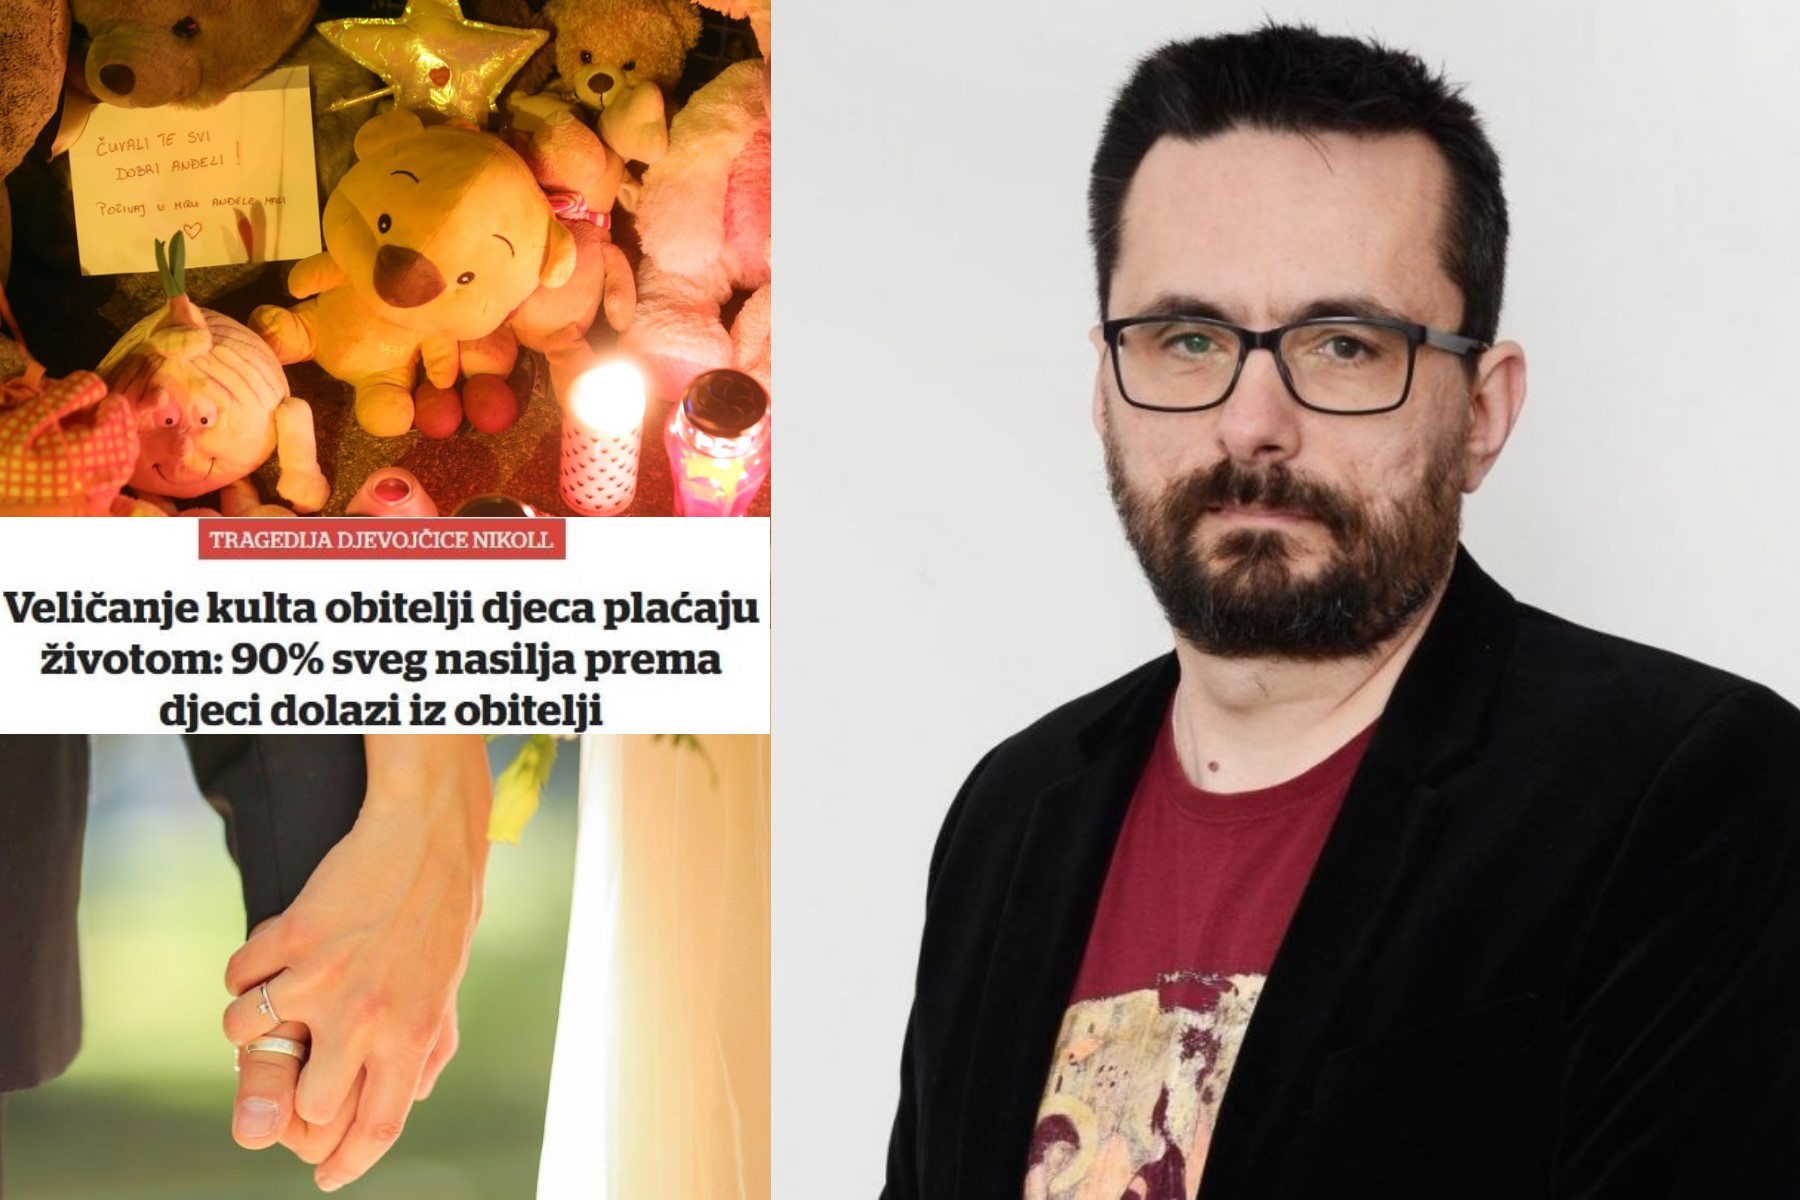 Andrijanić: VL nam pokušava usaditi u glavu kako je Nikol mrtva zato što su hrvatski građani izglasali zaštitu tradicionalnog braka